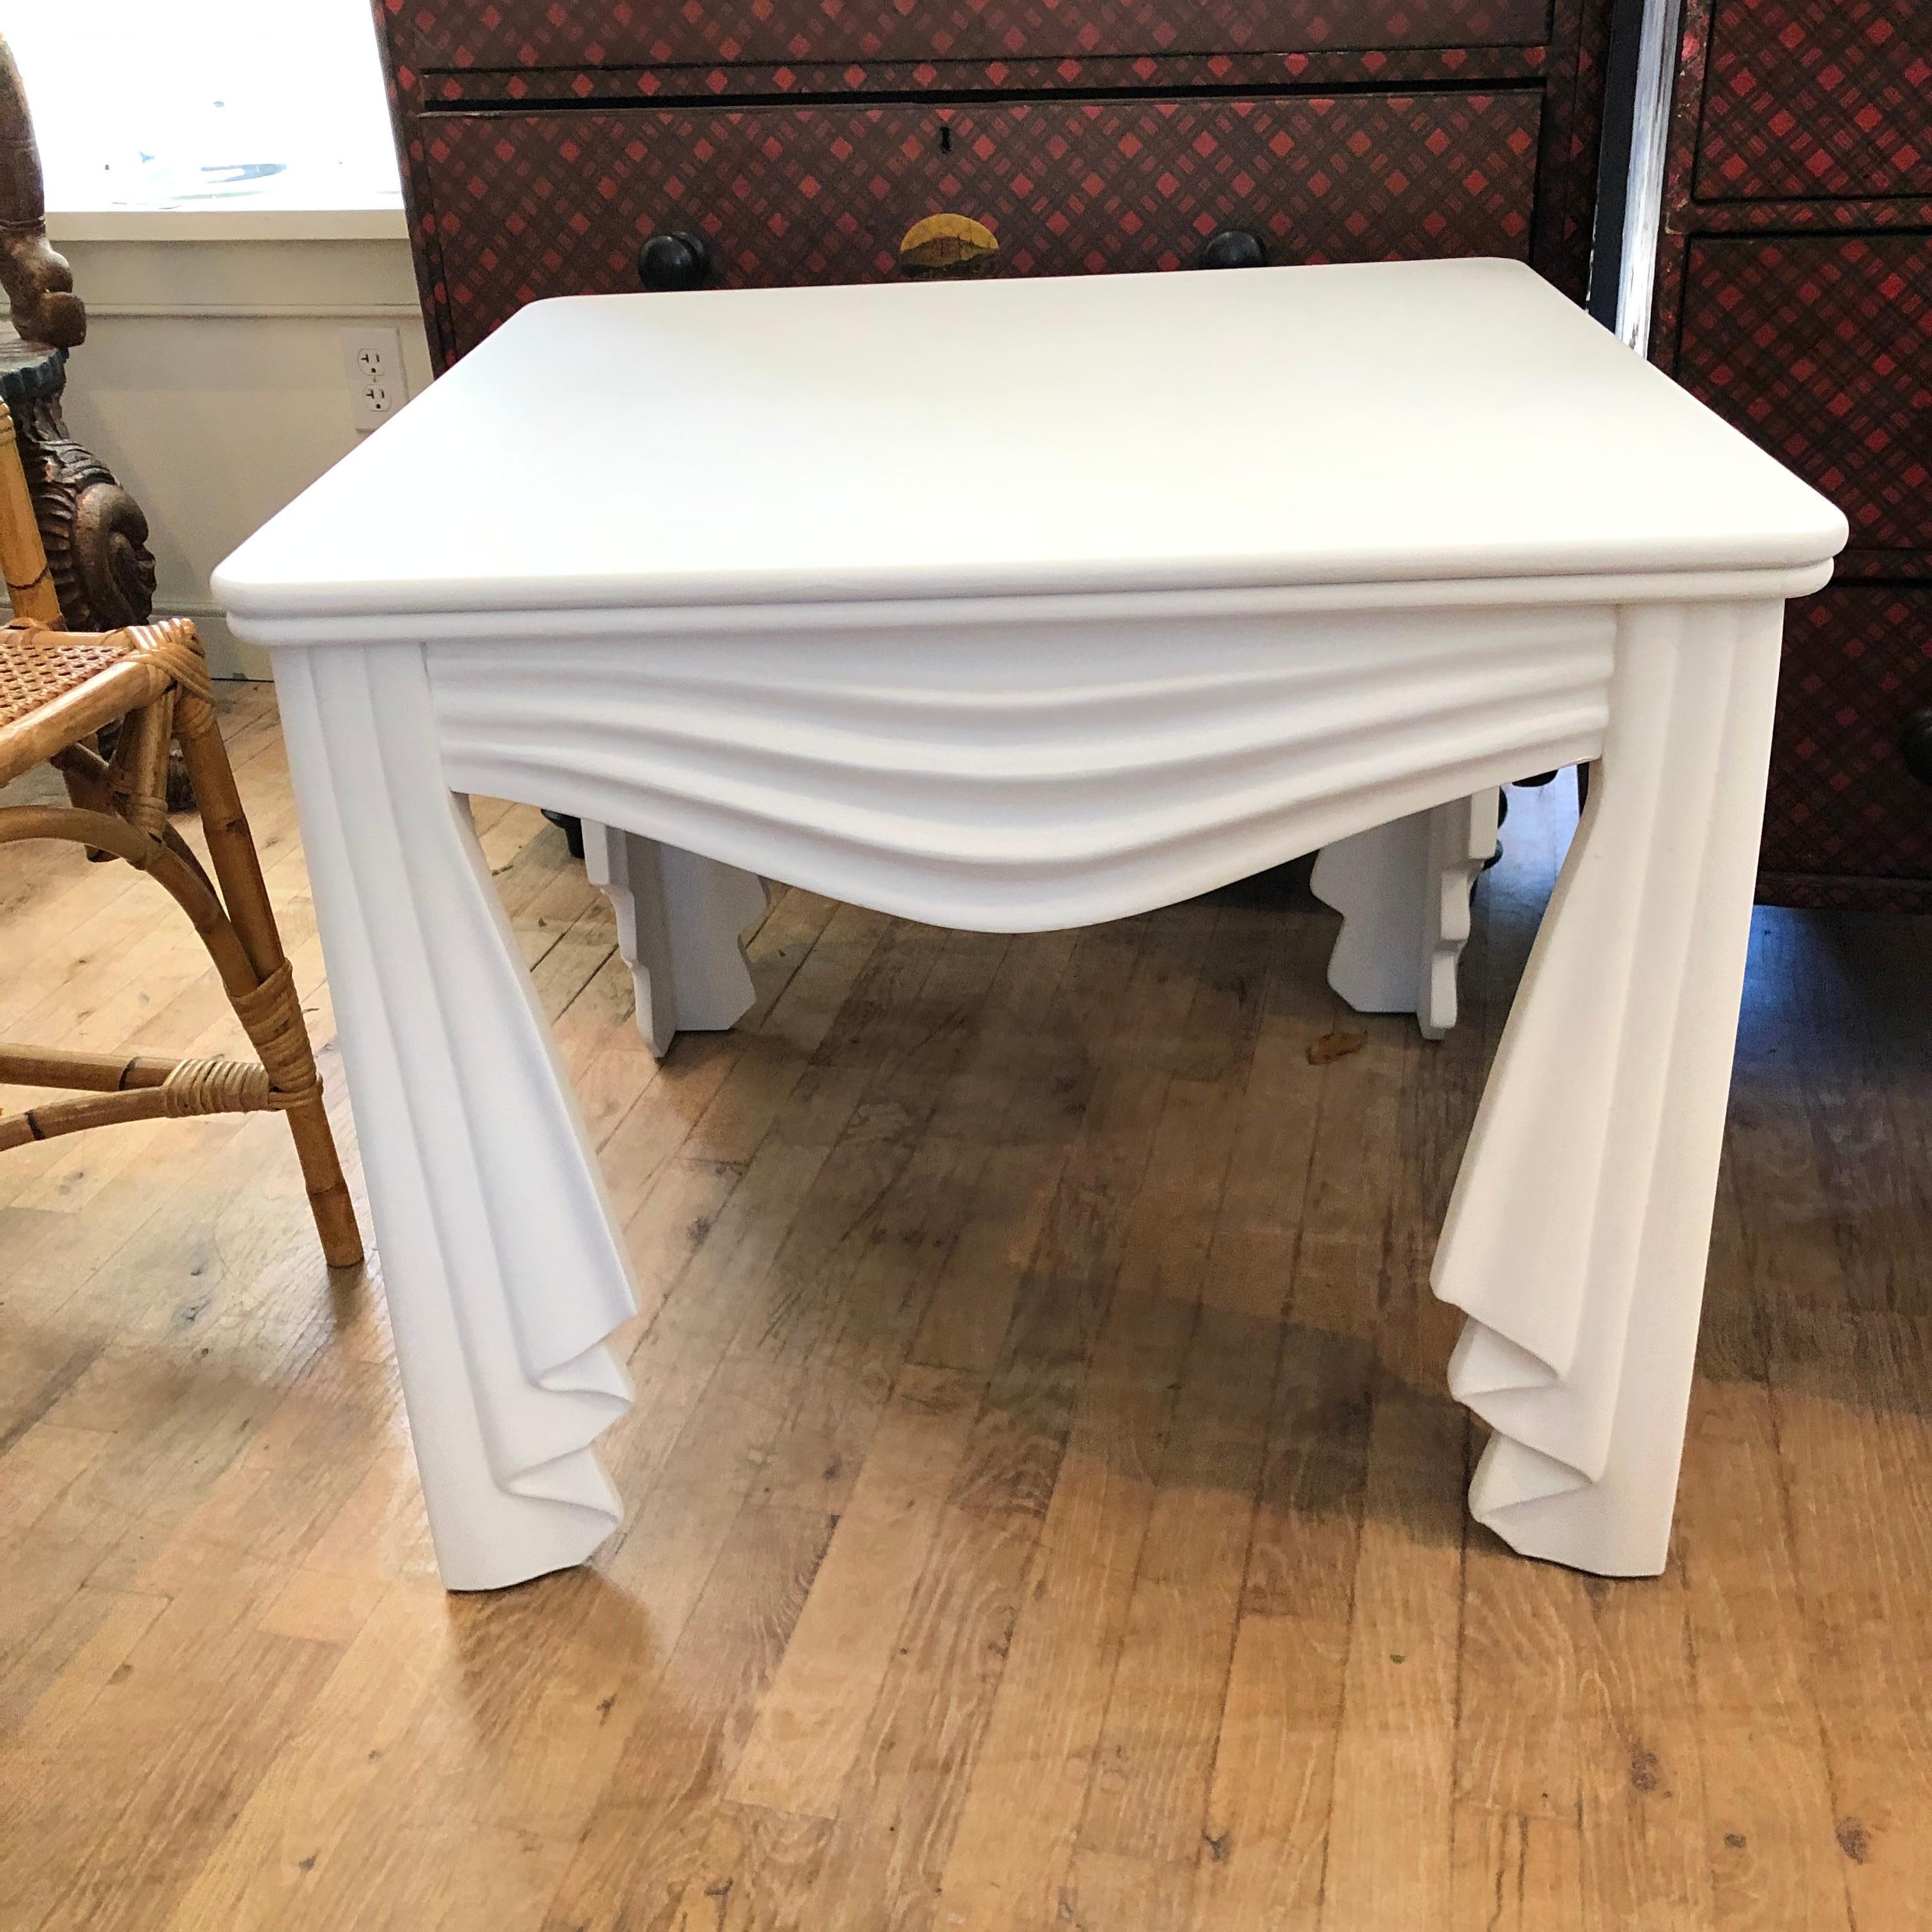 Schöne faux Stoff drapiert geschnitztem Holz Tisch neu lackiert in flachen weißen ... im Stil von John Dickinson ....